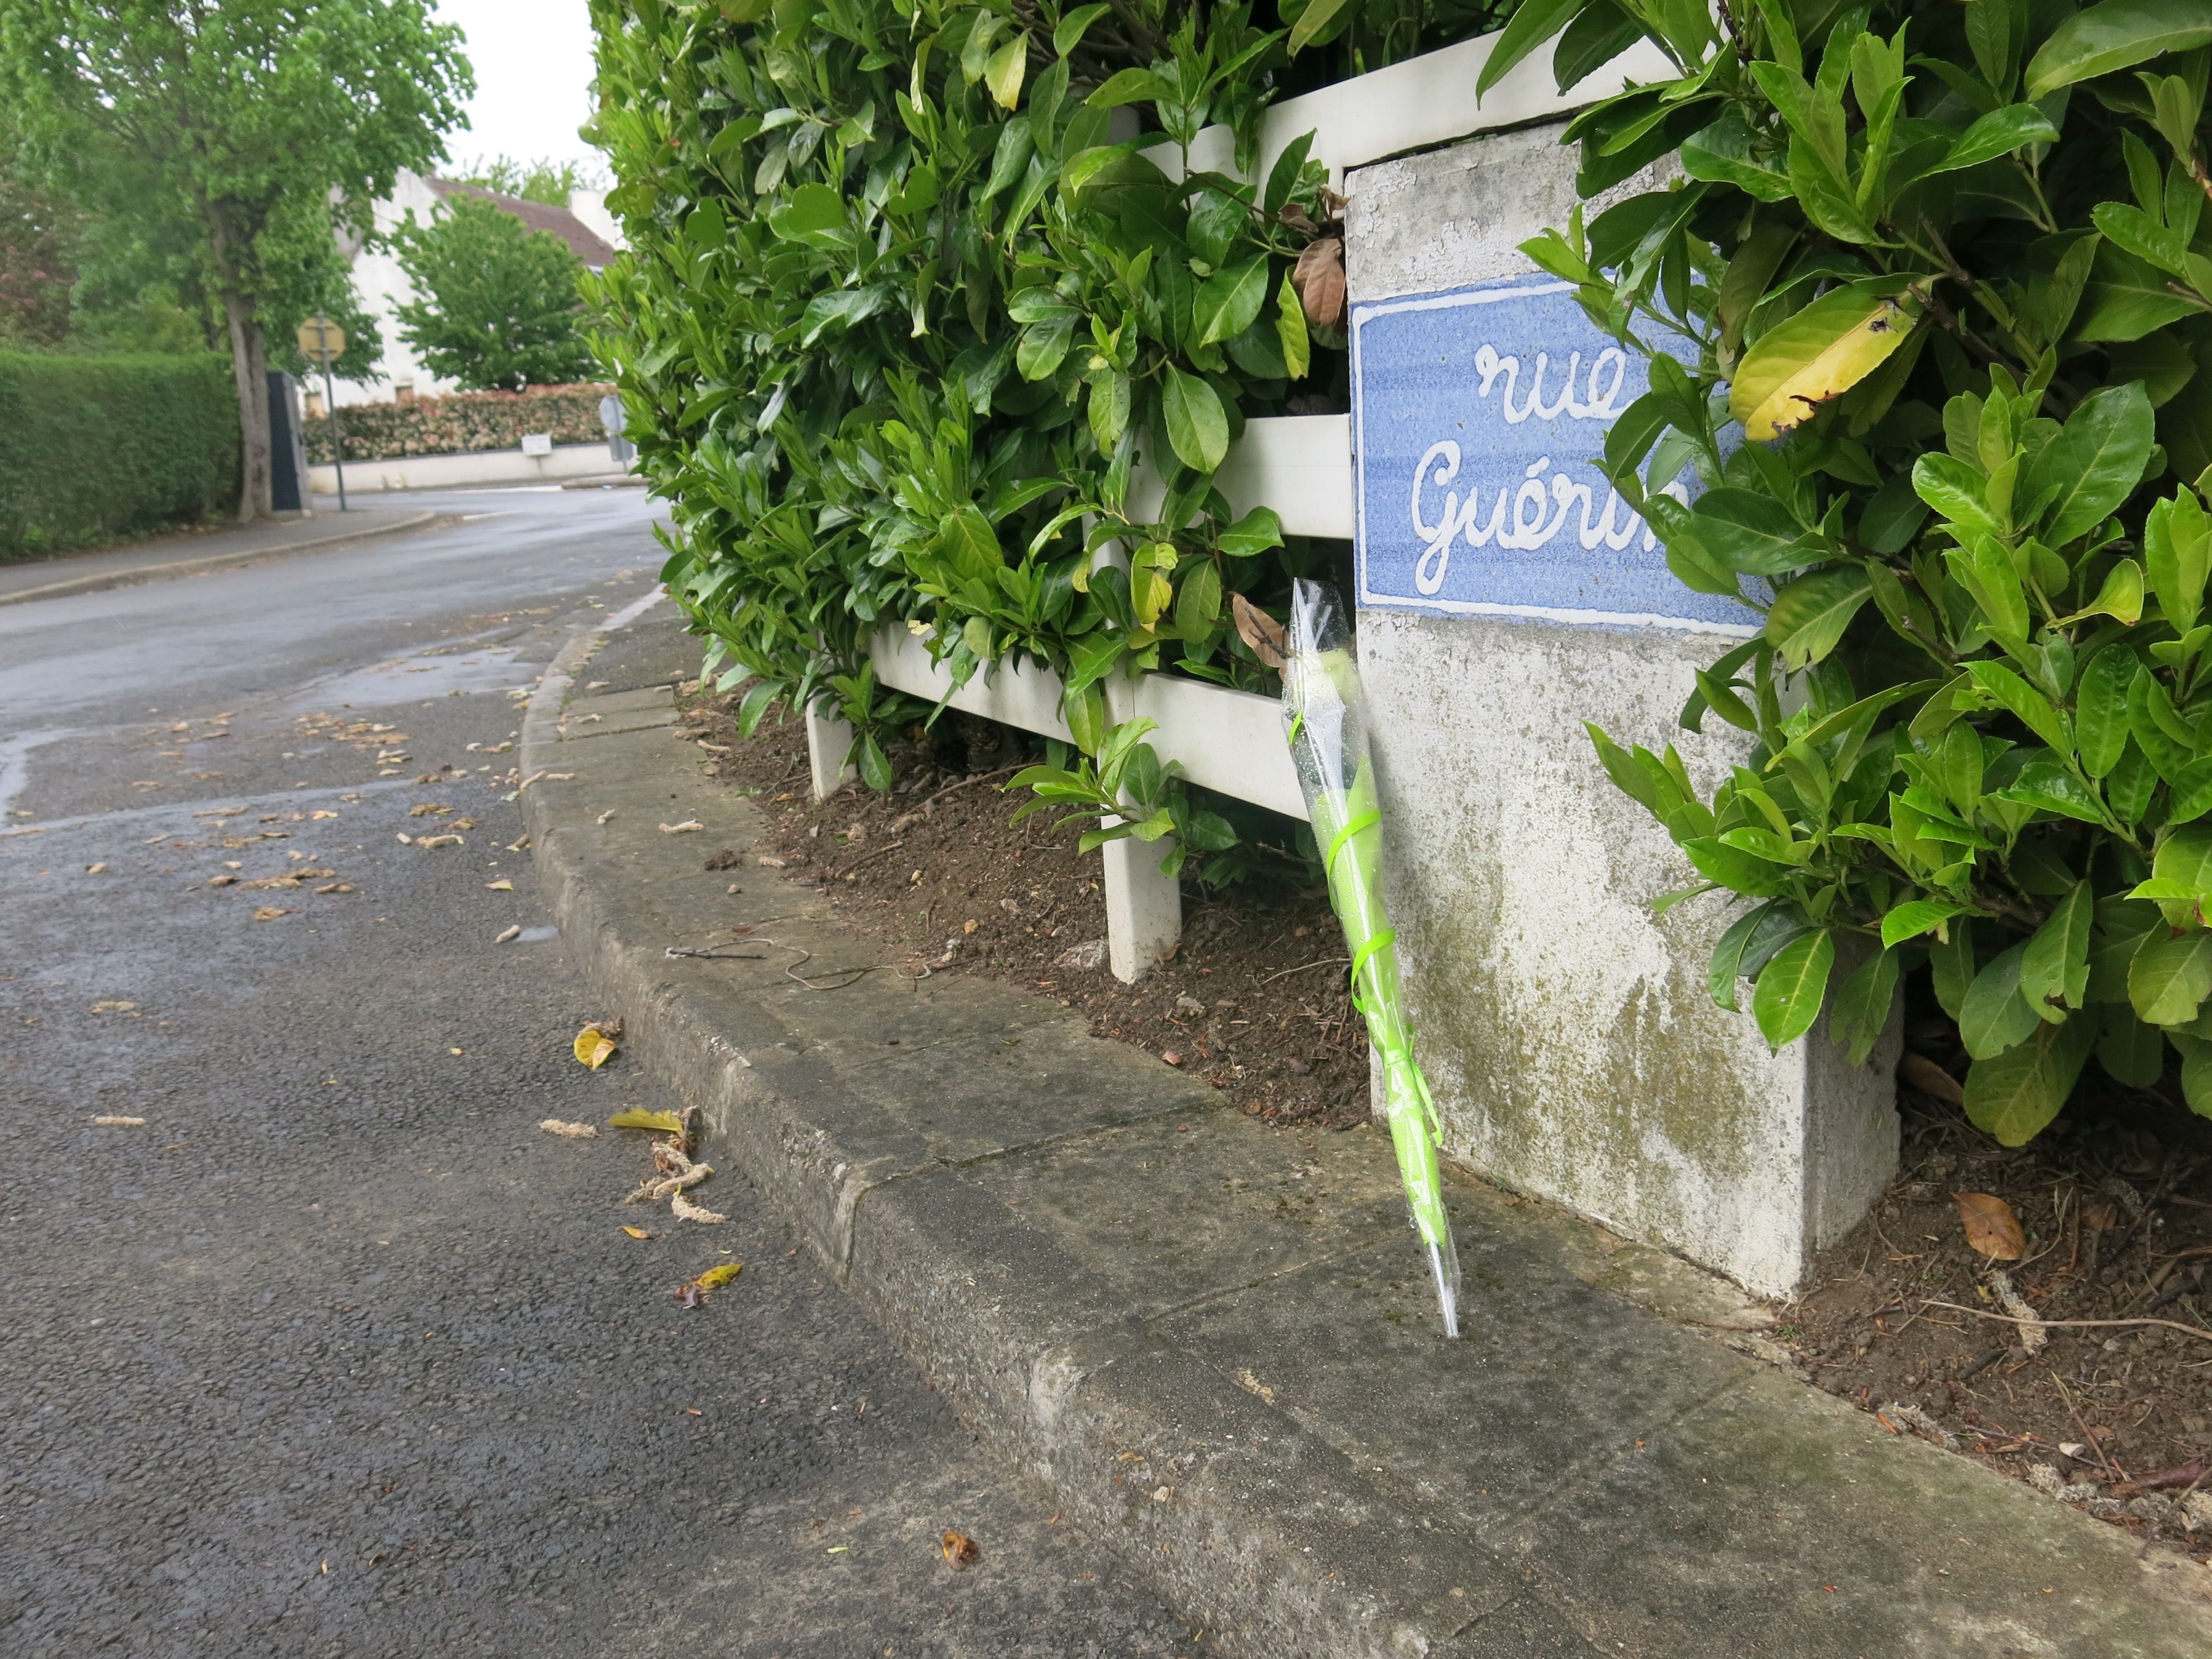 Au lendemain de la découverte du corps d'une jeune femme, rue Guérin à Pontault, une fleur a été déposée sur les lieux où elle a été retrouvée. LP/Sébastien Blondé